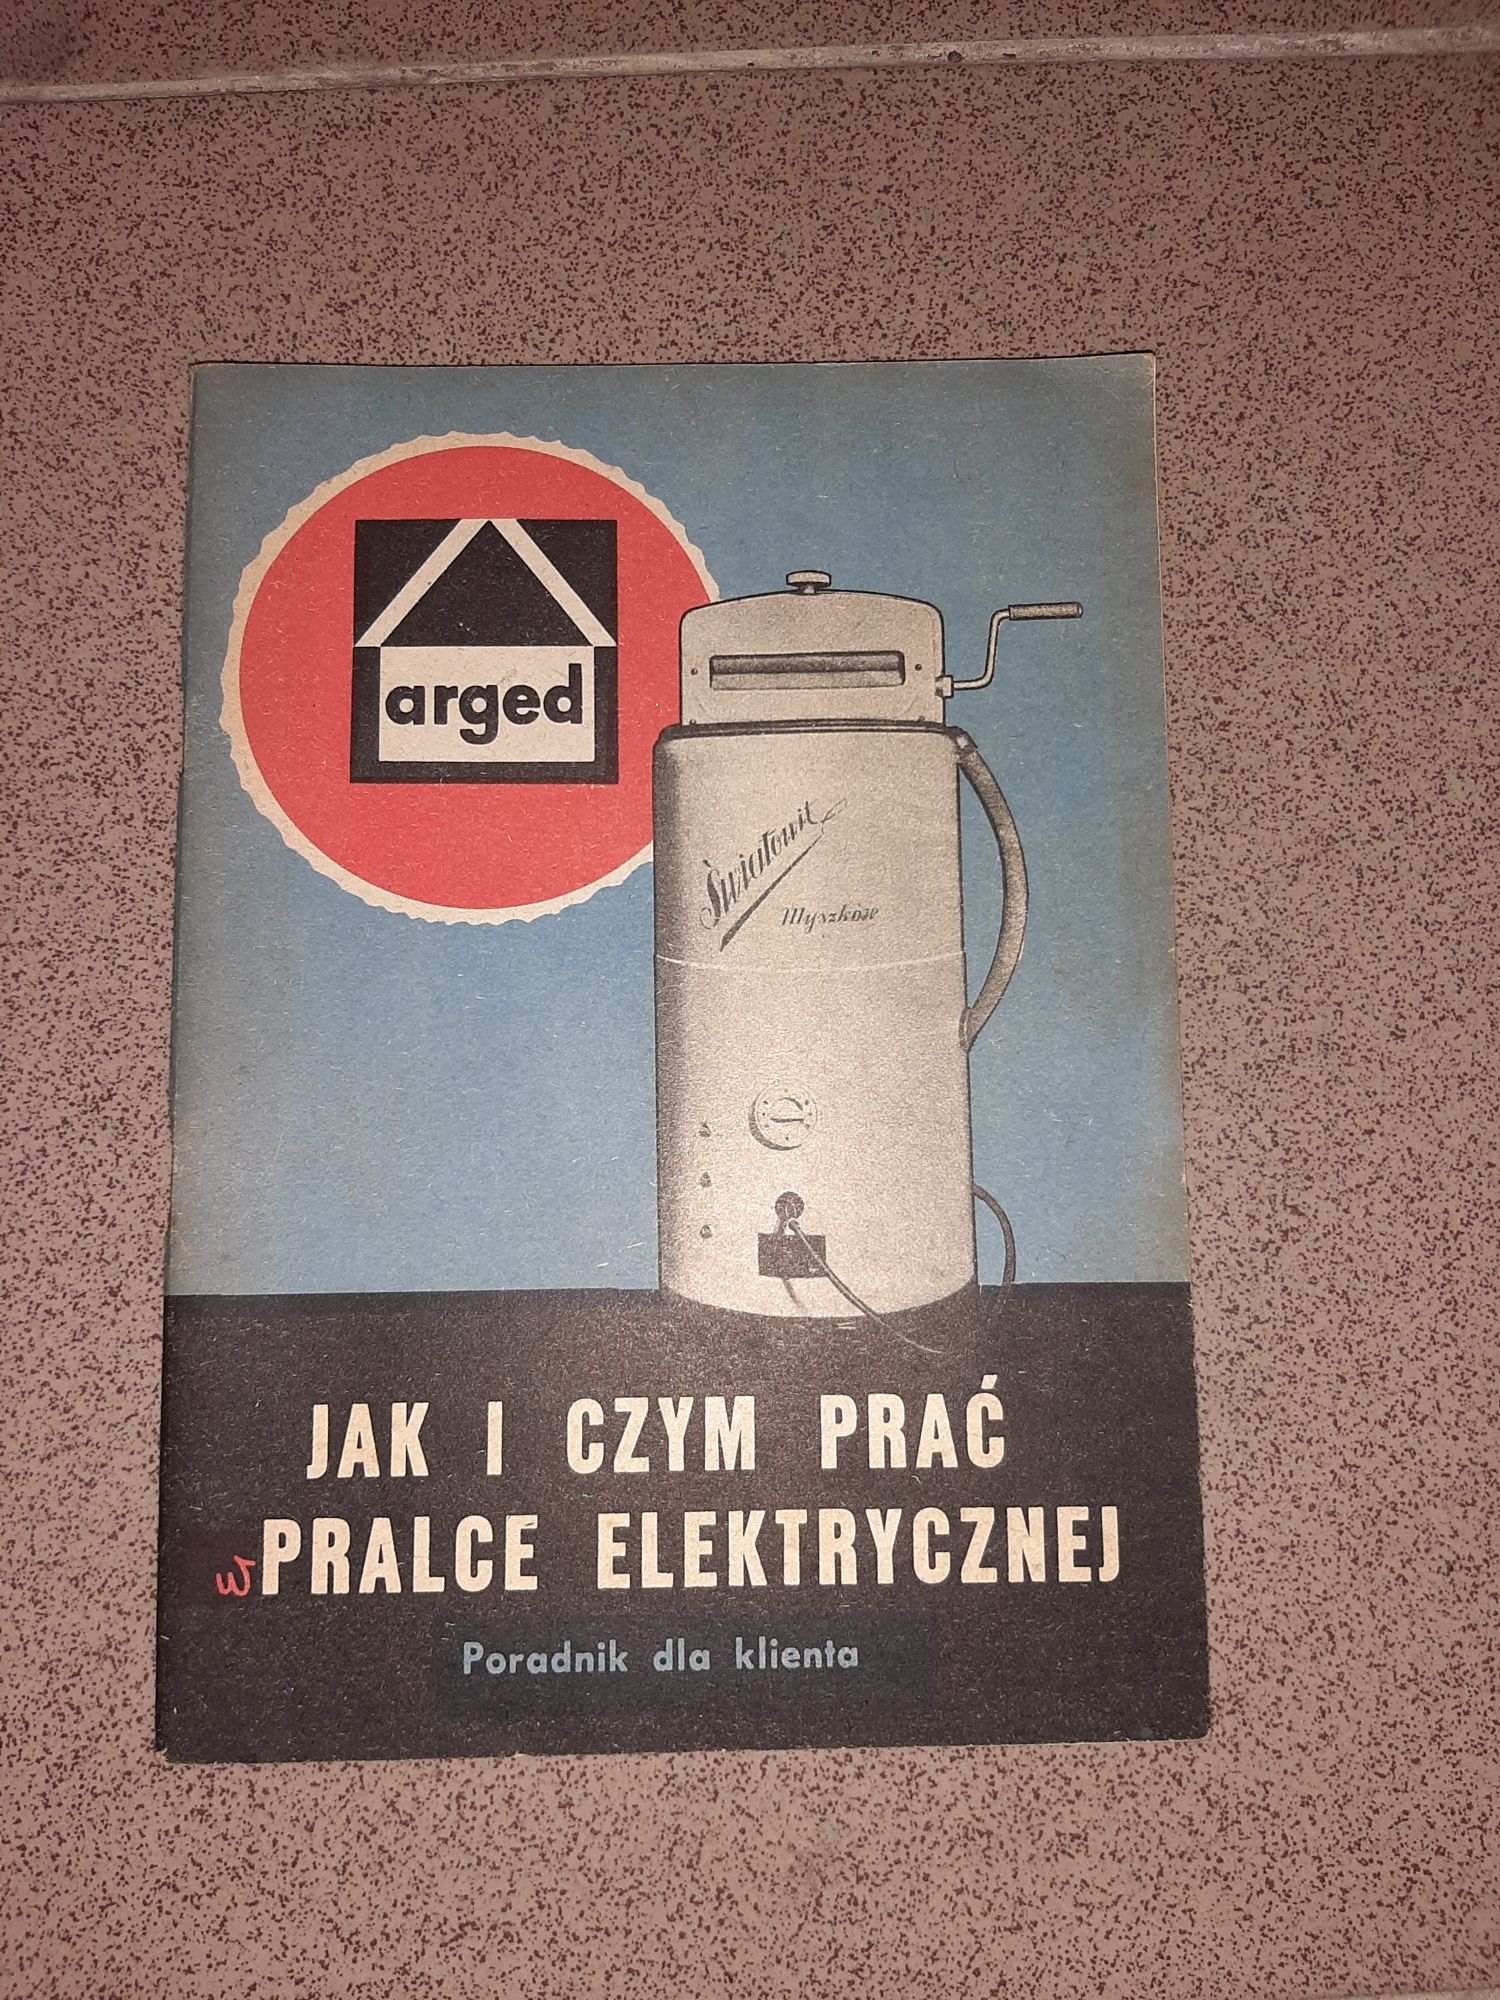 Jak i czym prać w pralce elektrycznej poradnik ARGED 1964